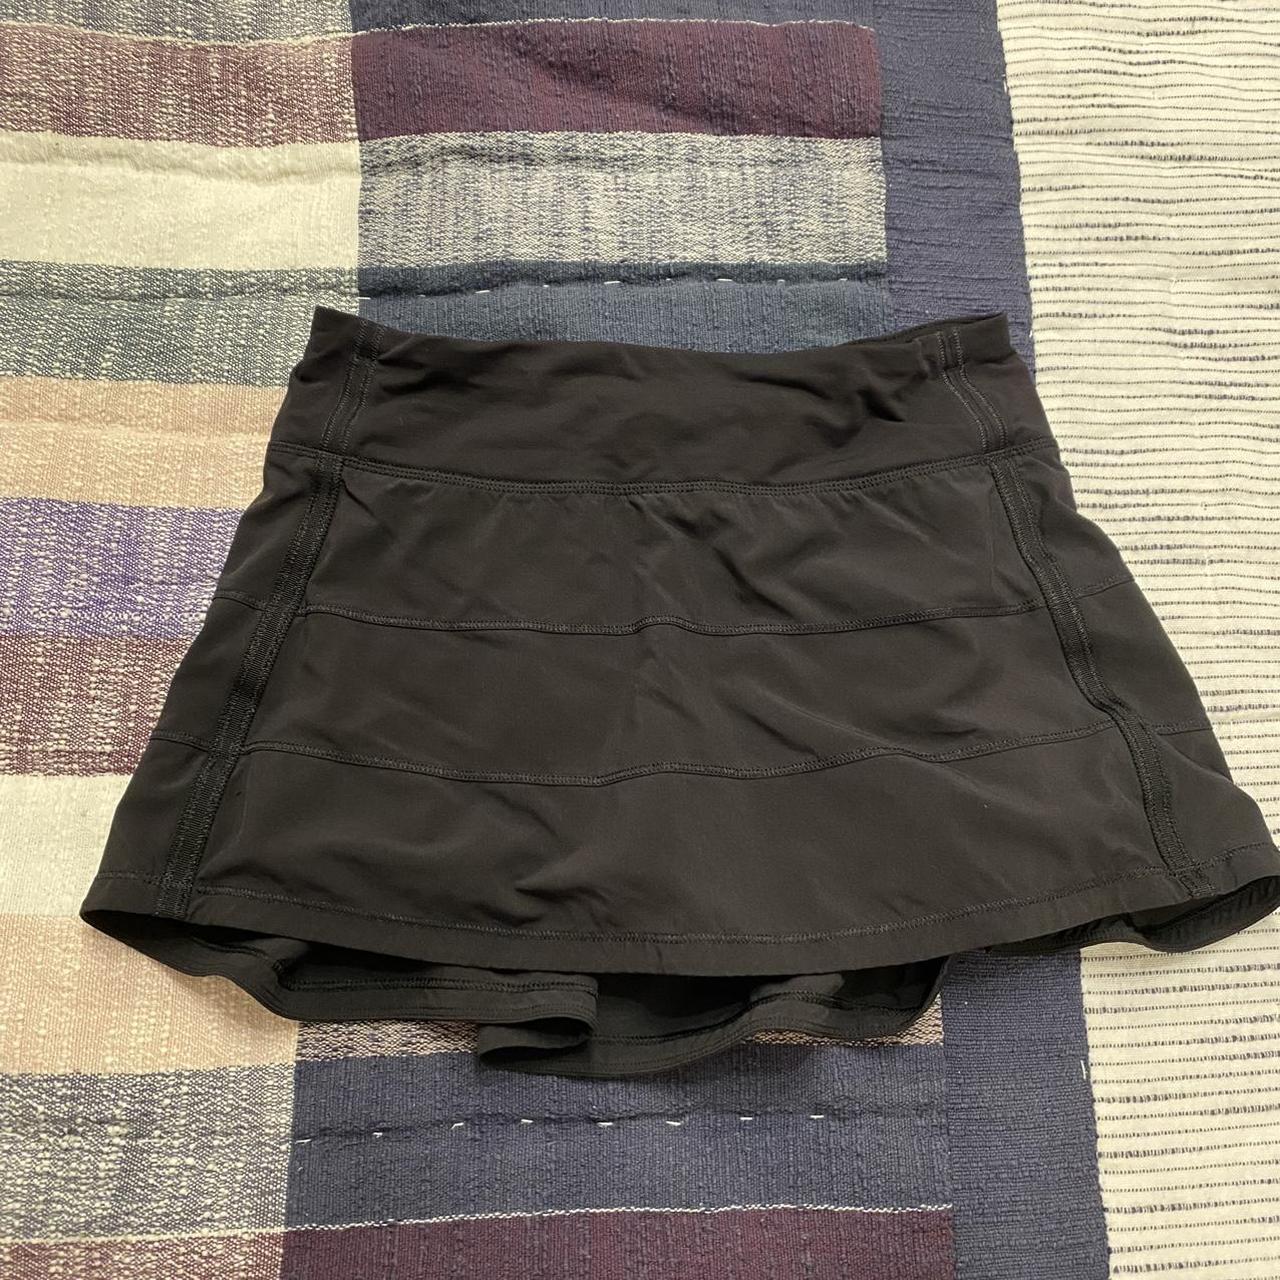 Lululemon Women's Skirt | Depop